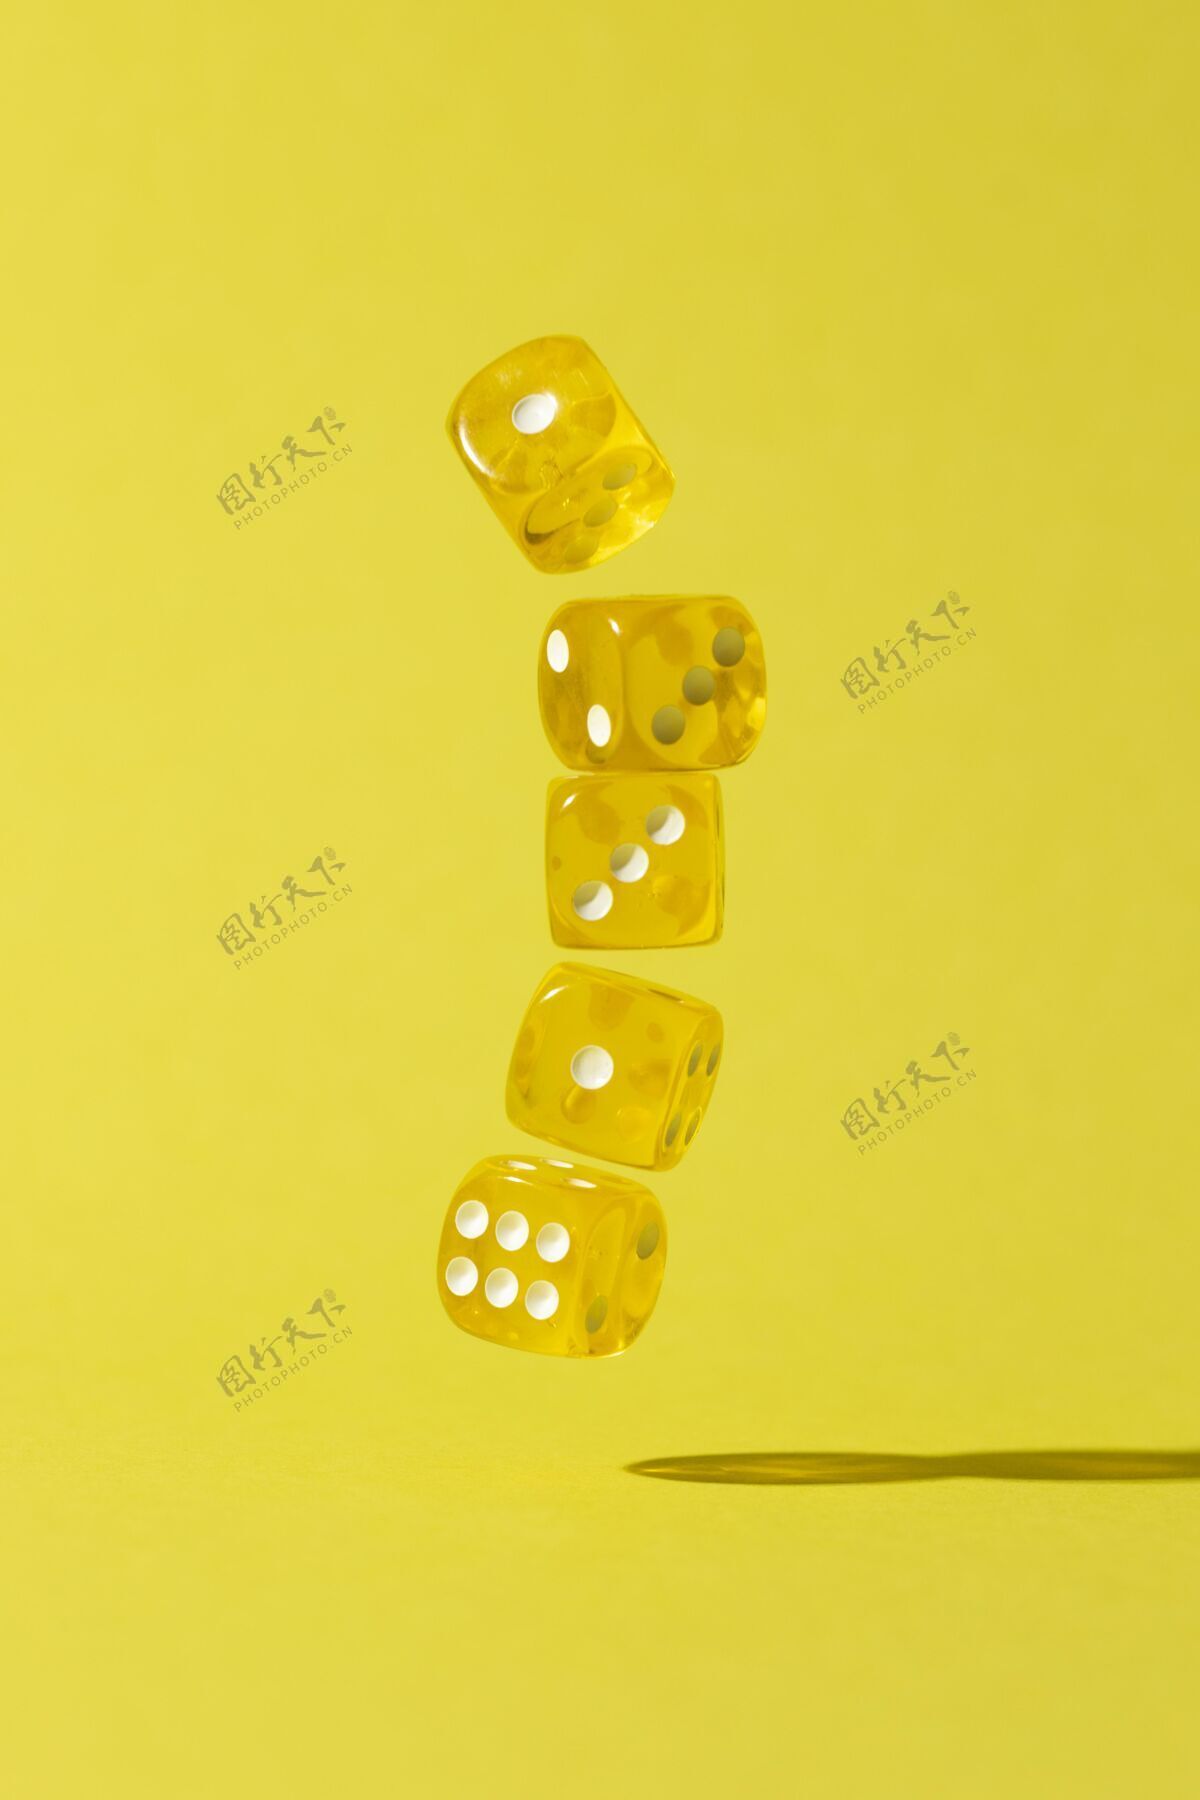 游戏落在黄色背景上的黄色骰子黄色幸运跌倒